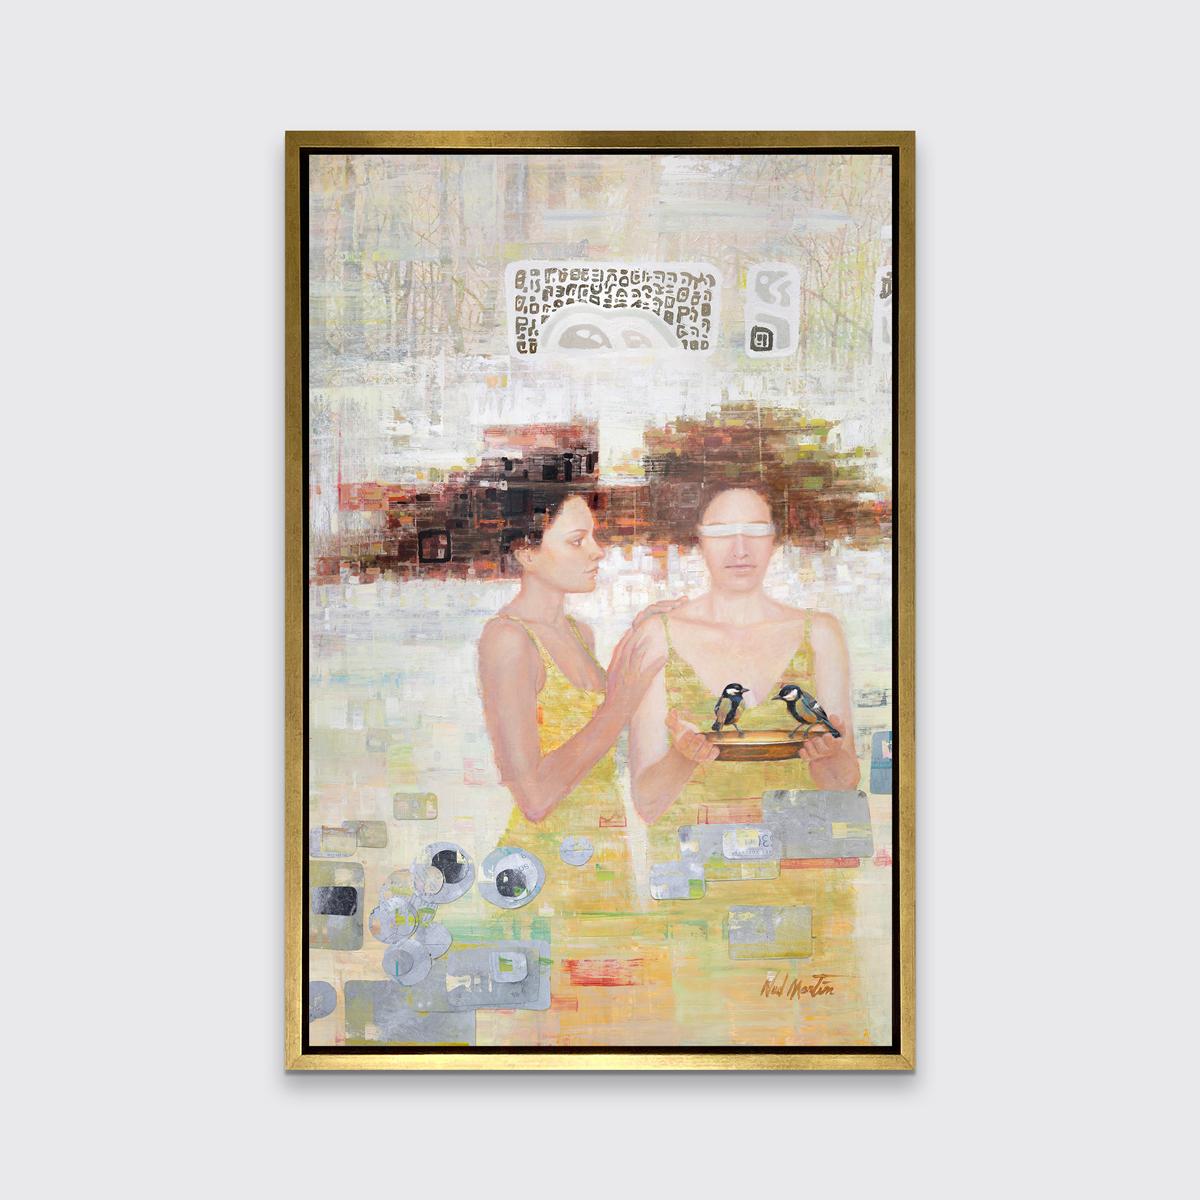 Cette impression abstraite figurative en édition limitée de Ned Martin présente une palette chaude. Deux femmes se tiennent ensemble, l'une avec les yeux couverts par un tissu blanc et tenant une petite plaque d'or sur laquelle se trouvent deux